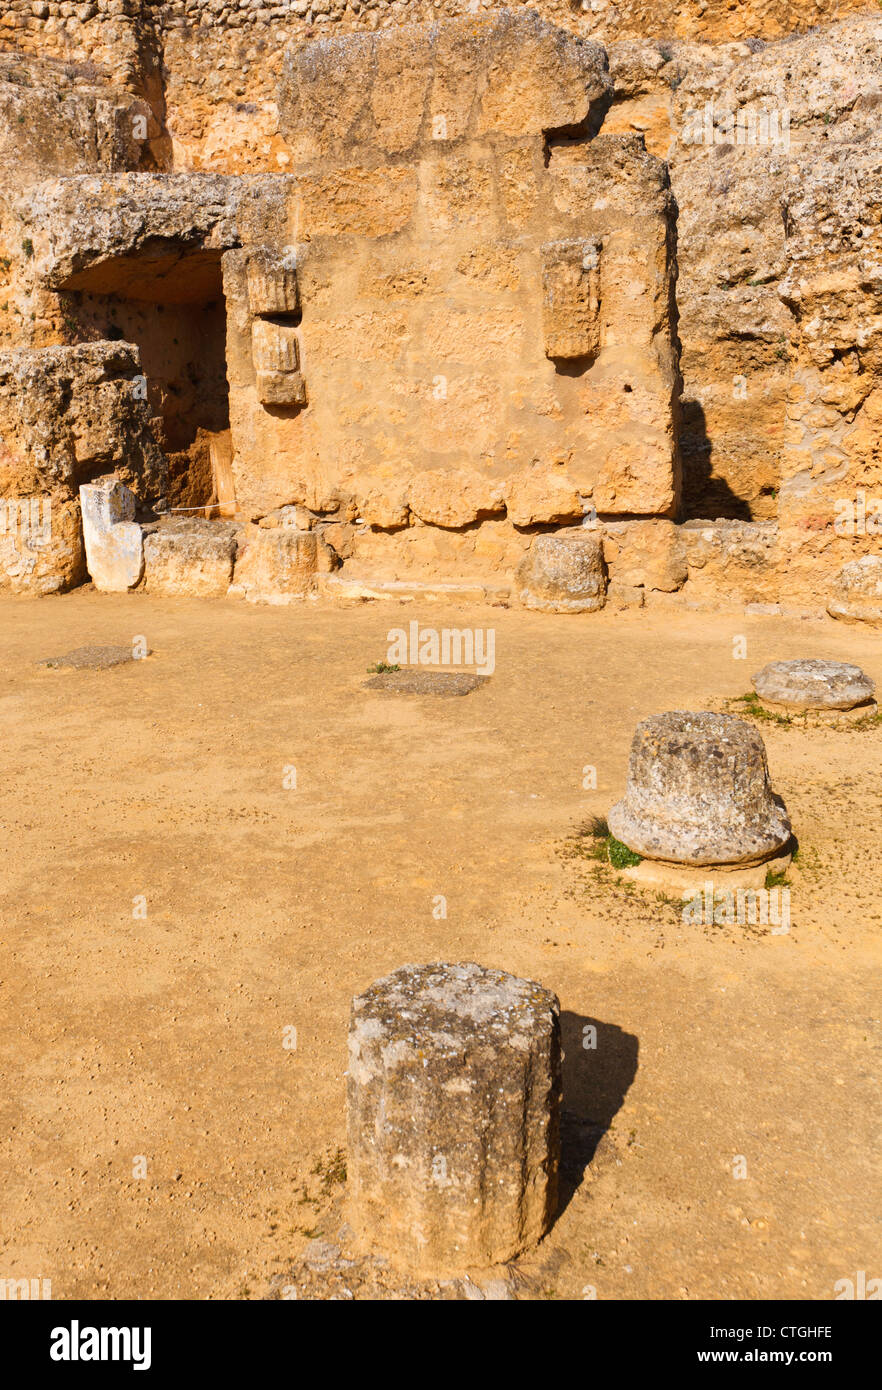 Il complesso archeologico, Carmona, provincia di Siviglia, Spagna. Tumba de Servilia, la tomba di Servilia. Foto Stock